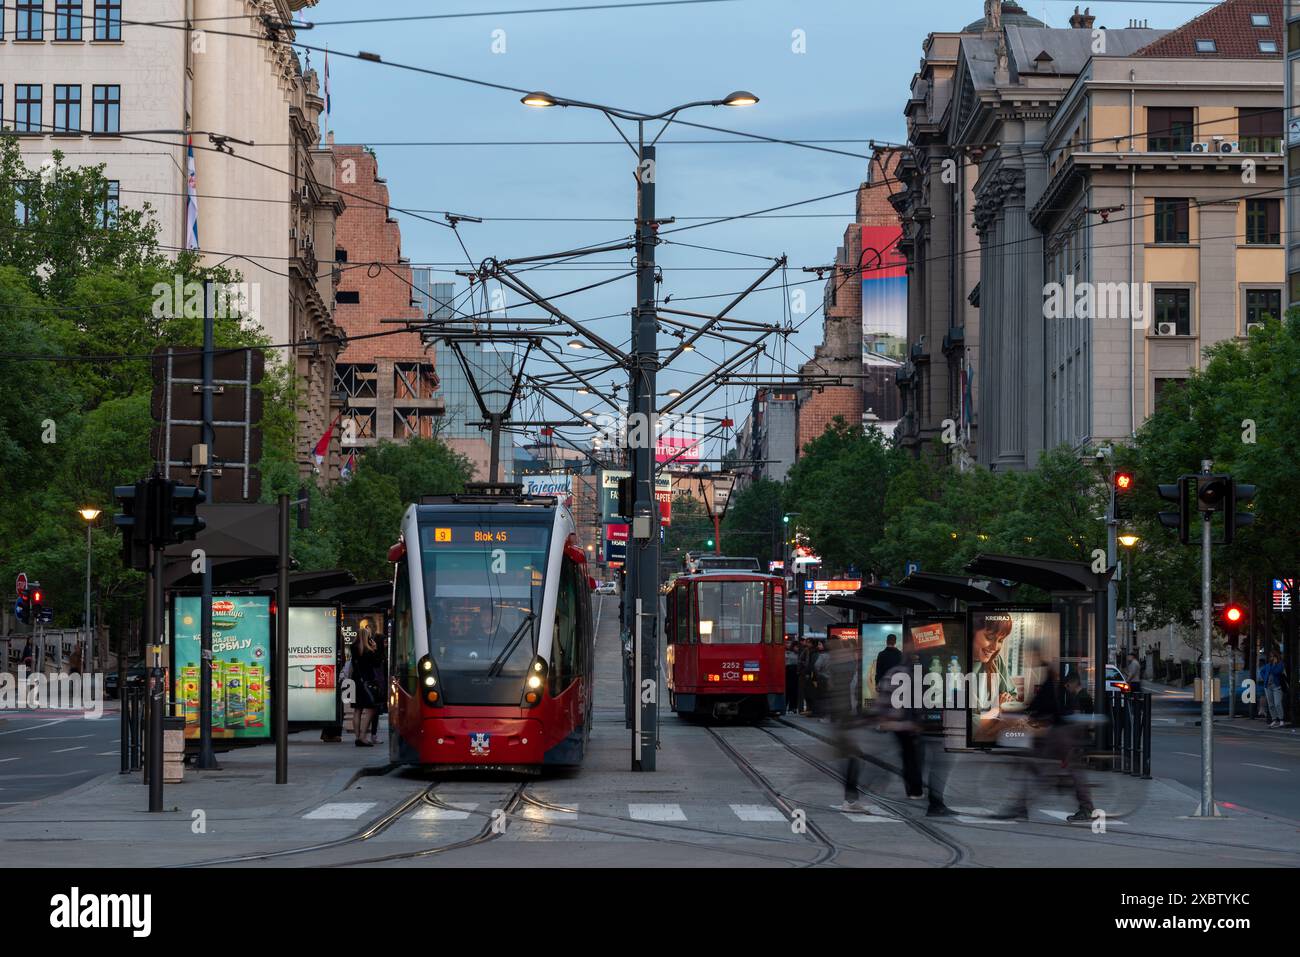 Traditionelle rote elektrische Straßenbahnen, die am frühen Abend Passagiere durch die Straßen von Belgrad bringen. Stockfoto